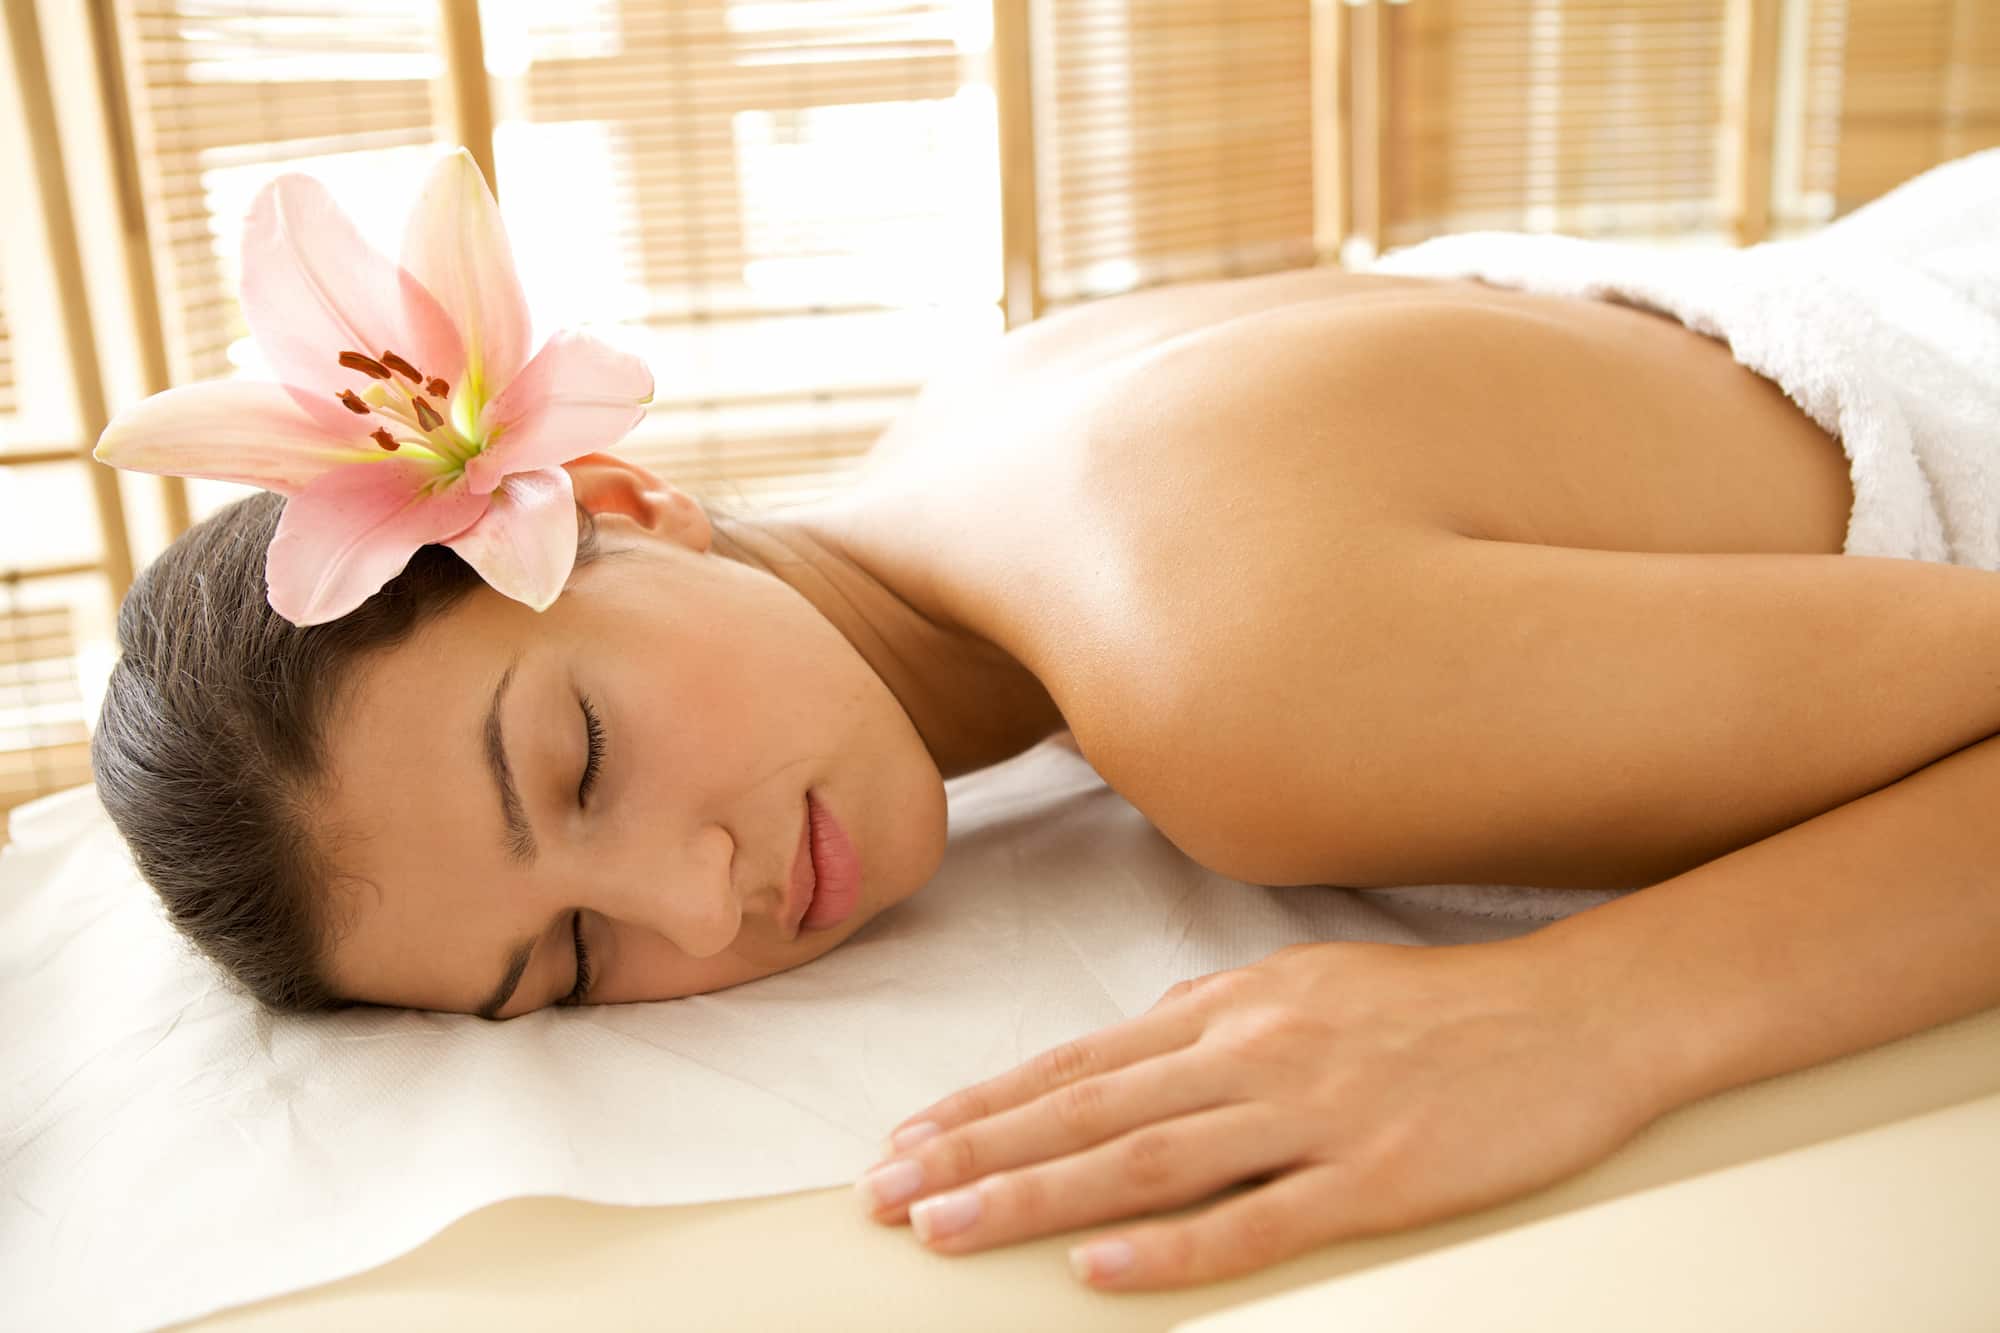 Mulher relaxando de bruços em maca de massagem com flor na orelha